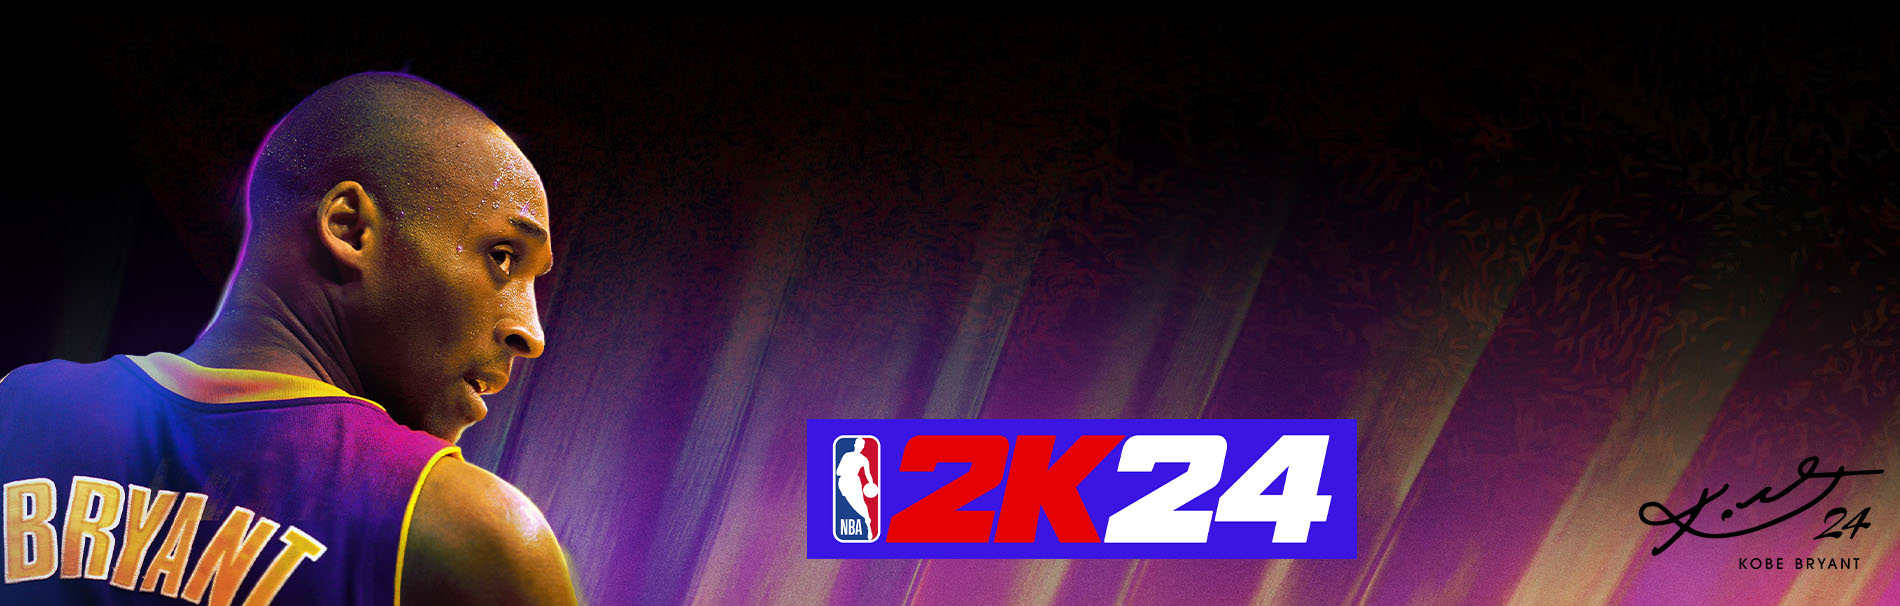 NBA 2k24 LP 9.12.23tile 8